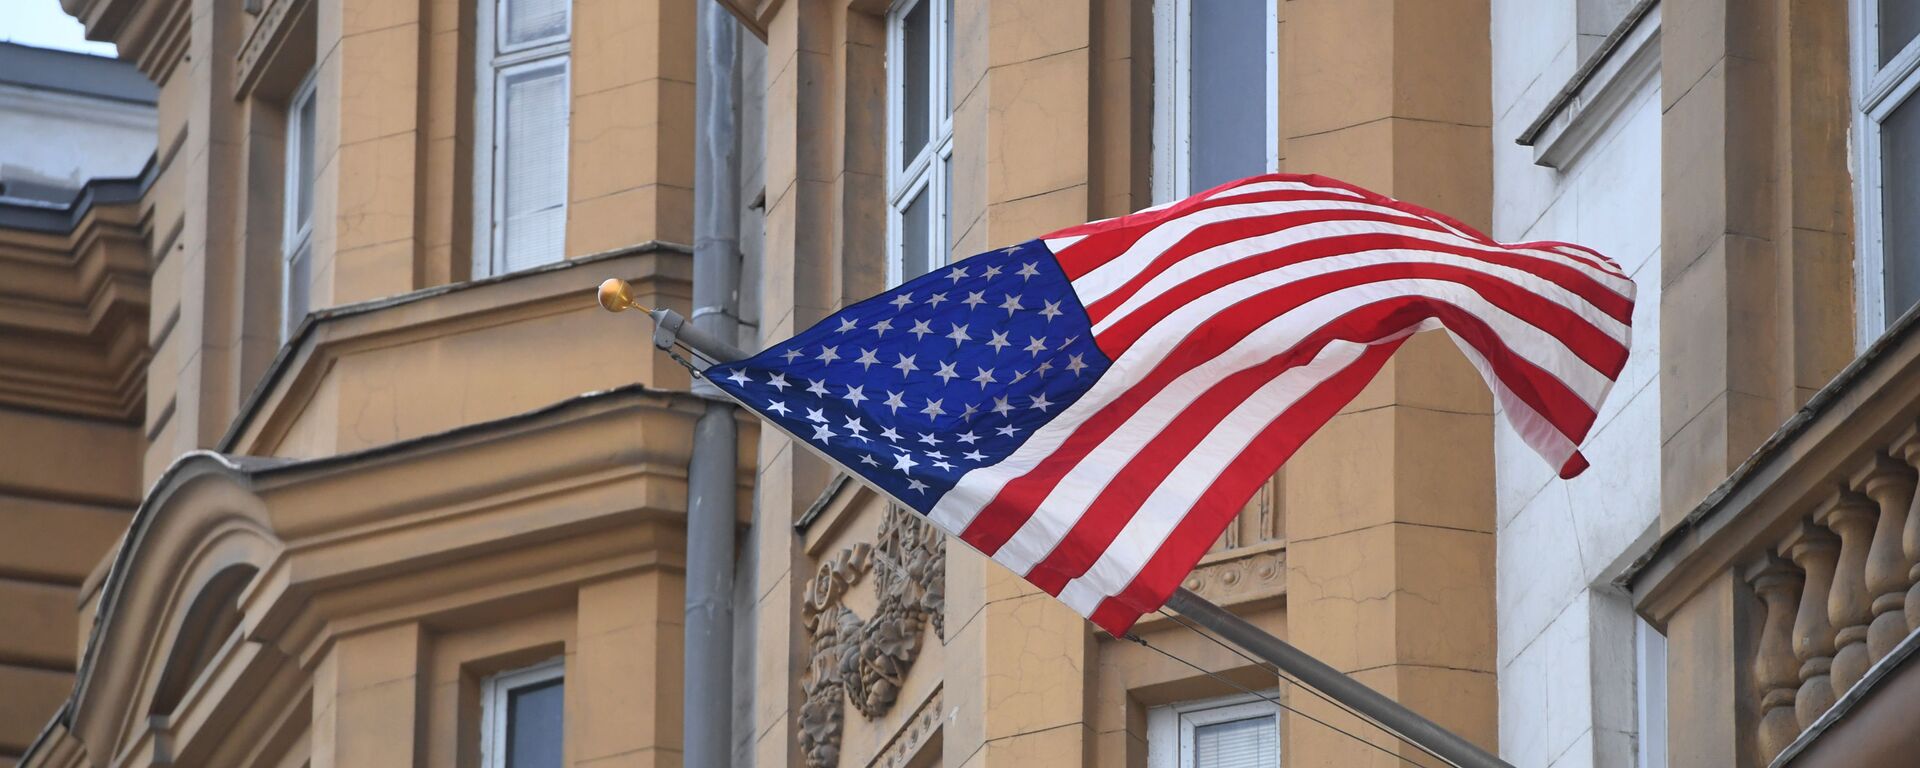 Застава САД на згради америчке амбасаде у Москви - Sputnik Србија, 1920, 01.08.2021